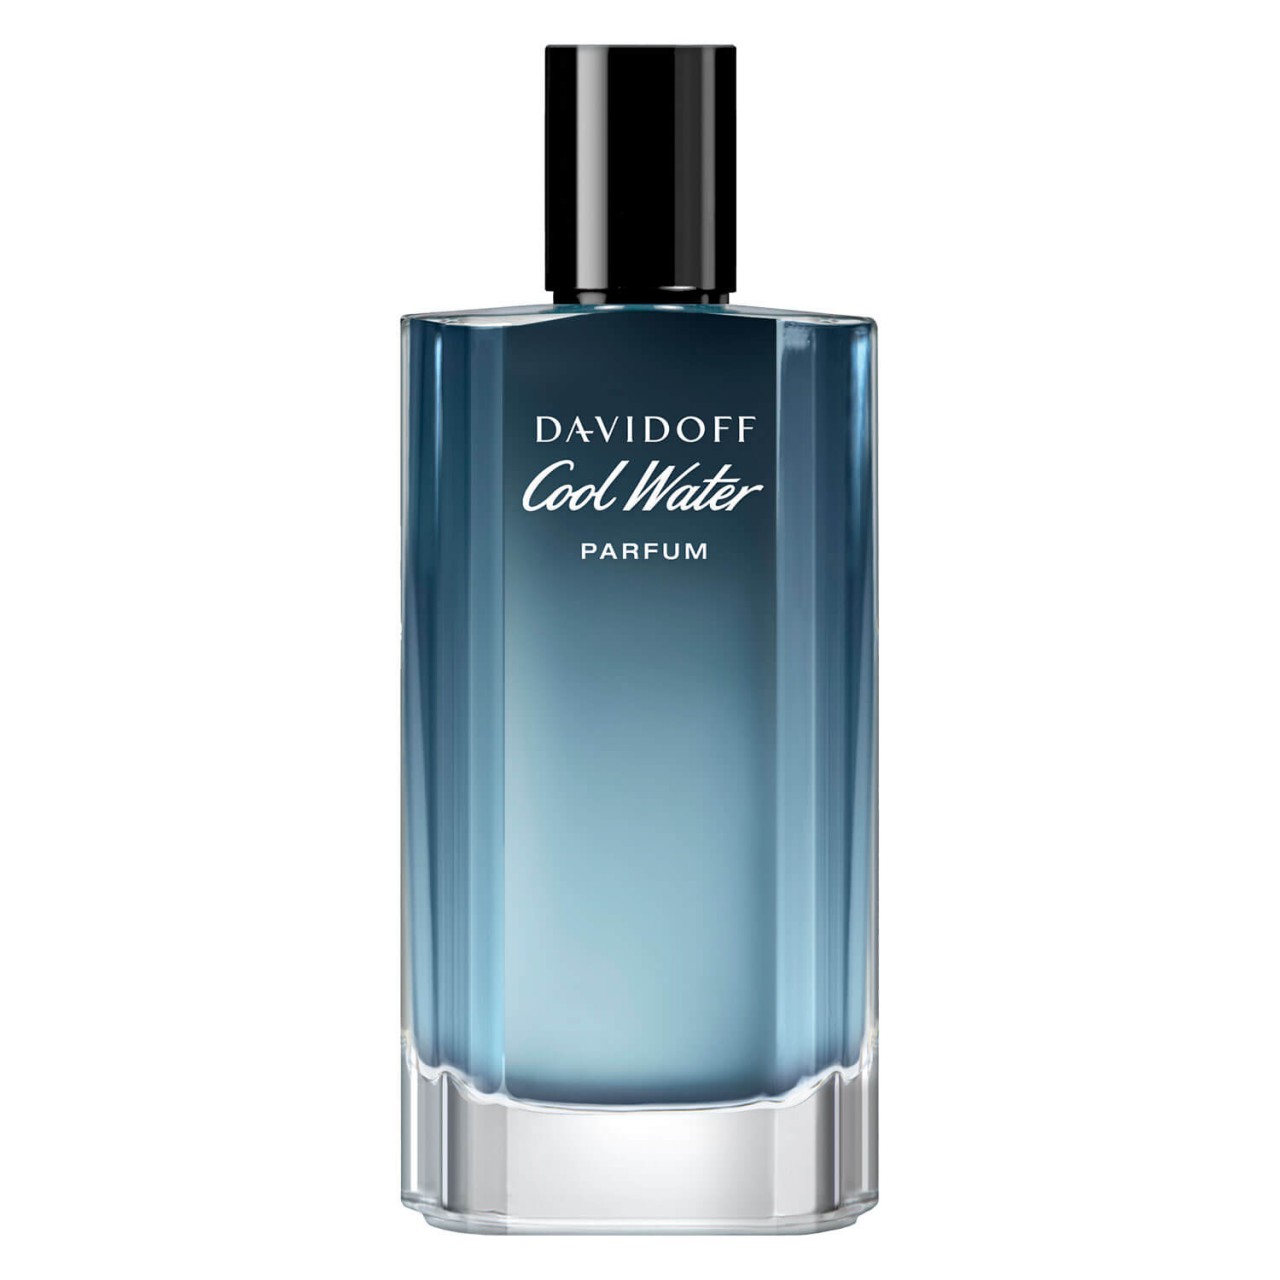 Cool Water - Parfum For Him von Davidoff